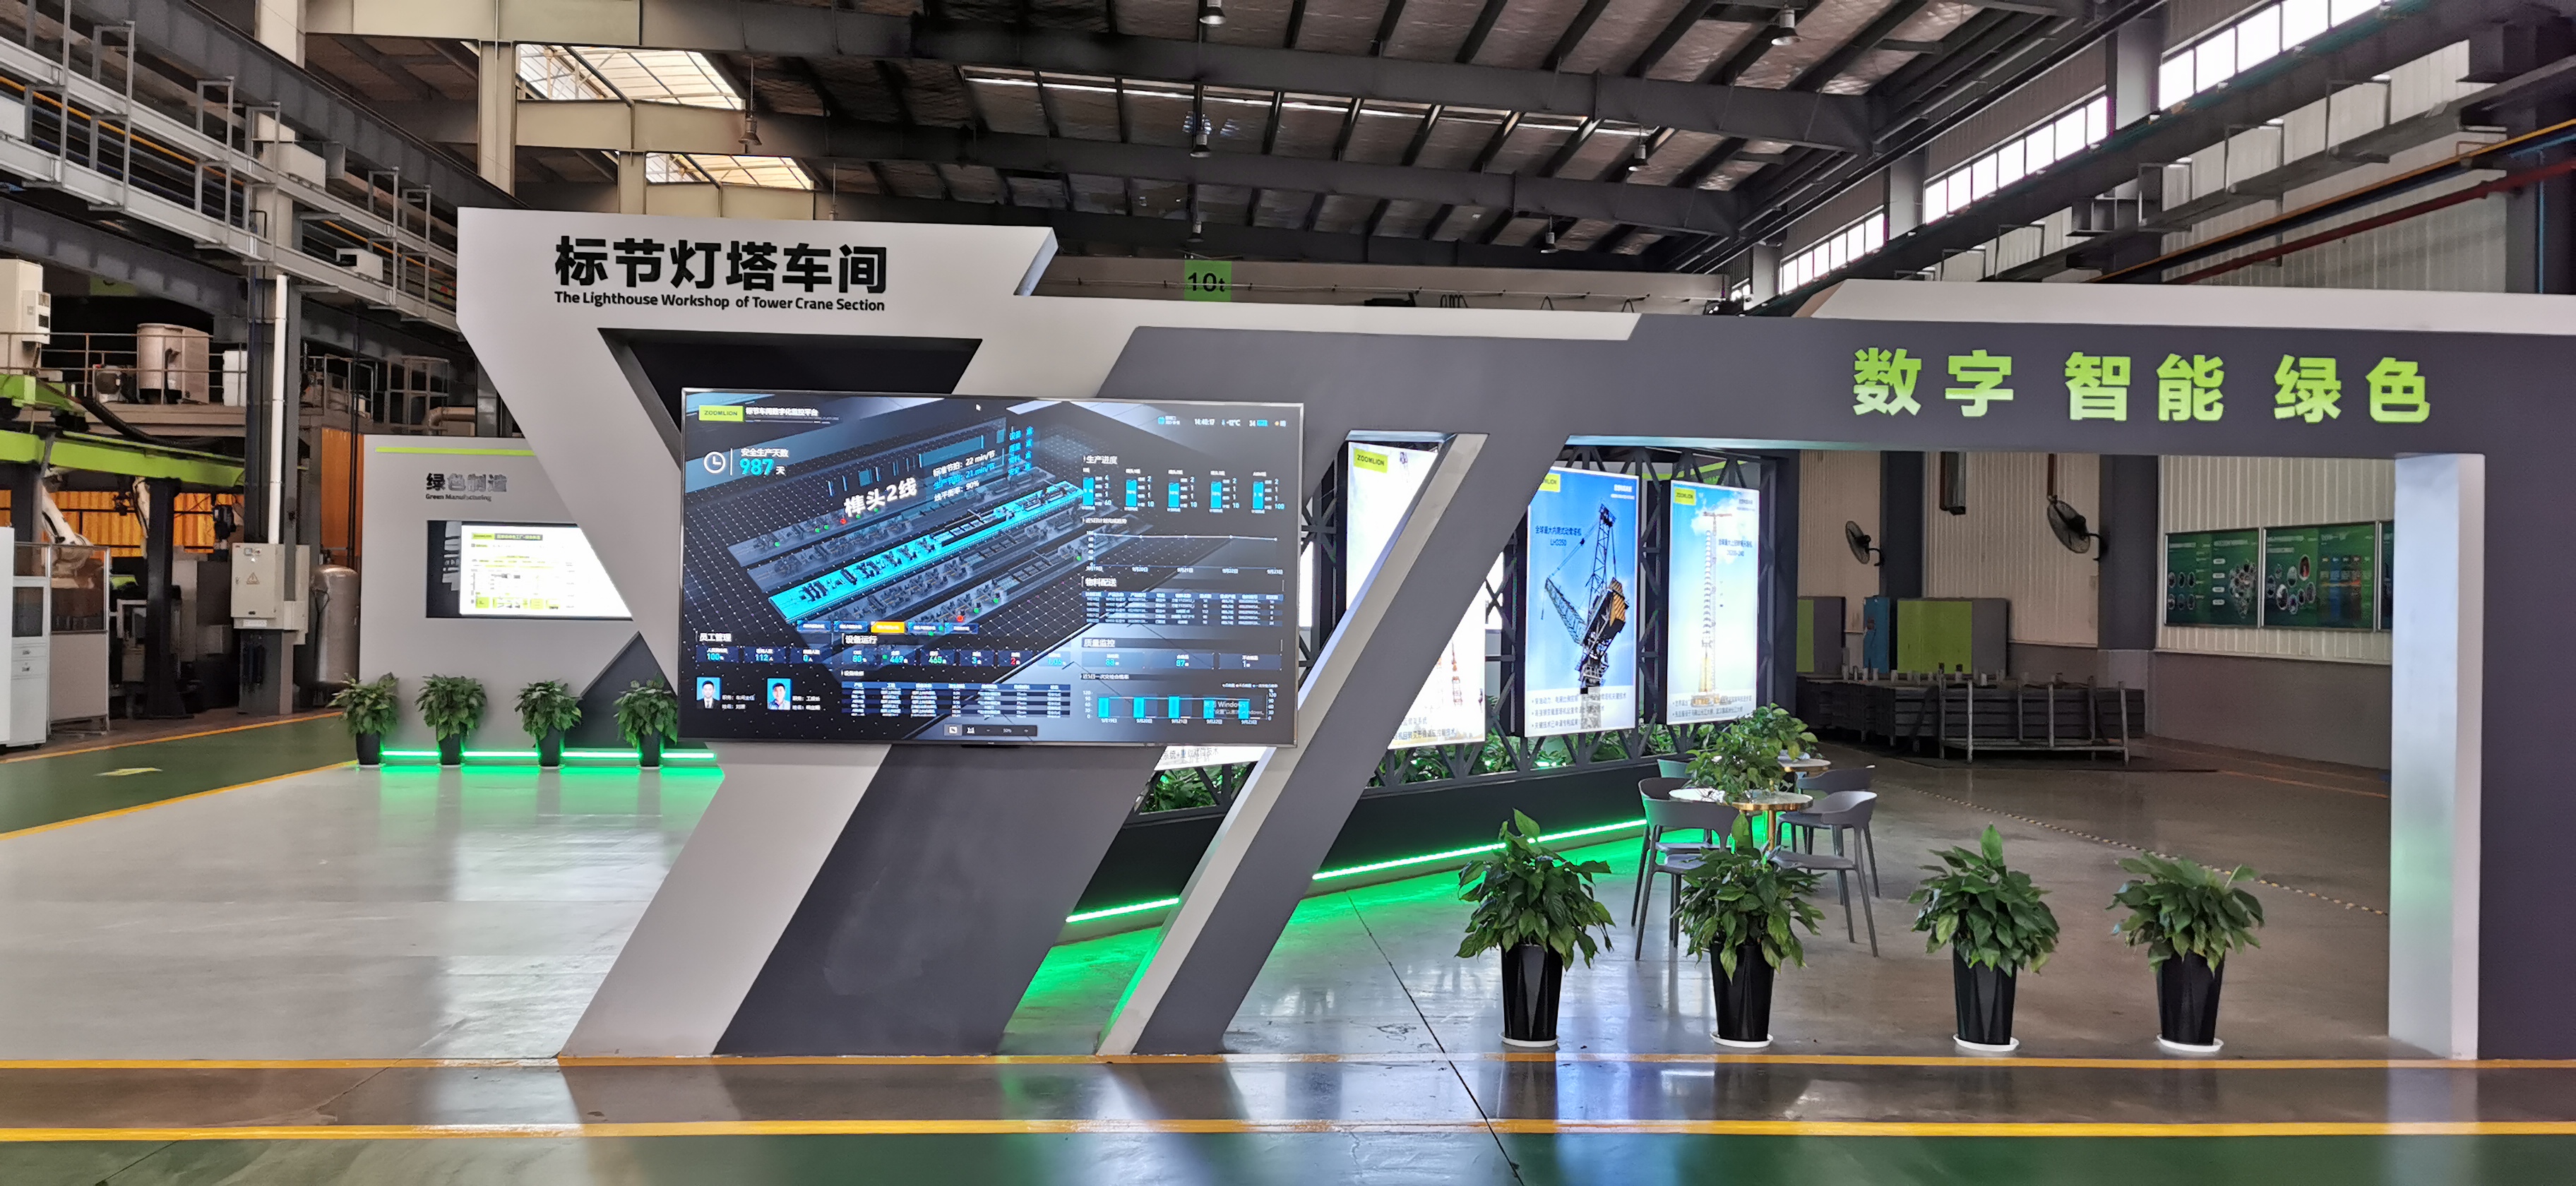 2021中國工程機械十大營銷事件揭曉 中聯重科榮獲